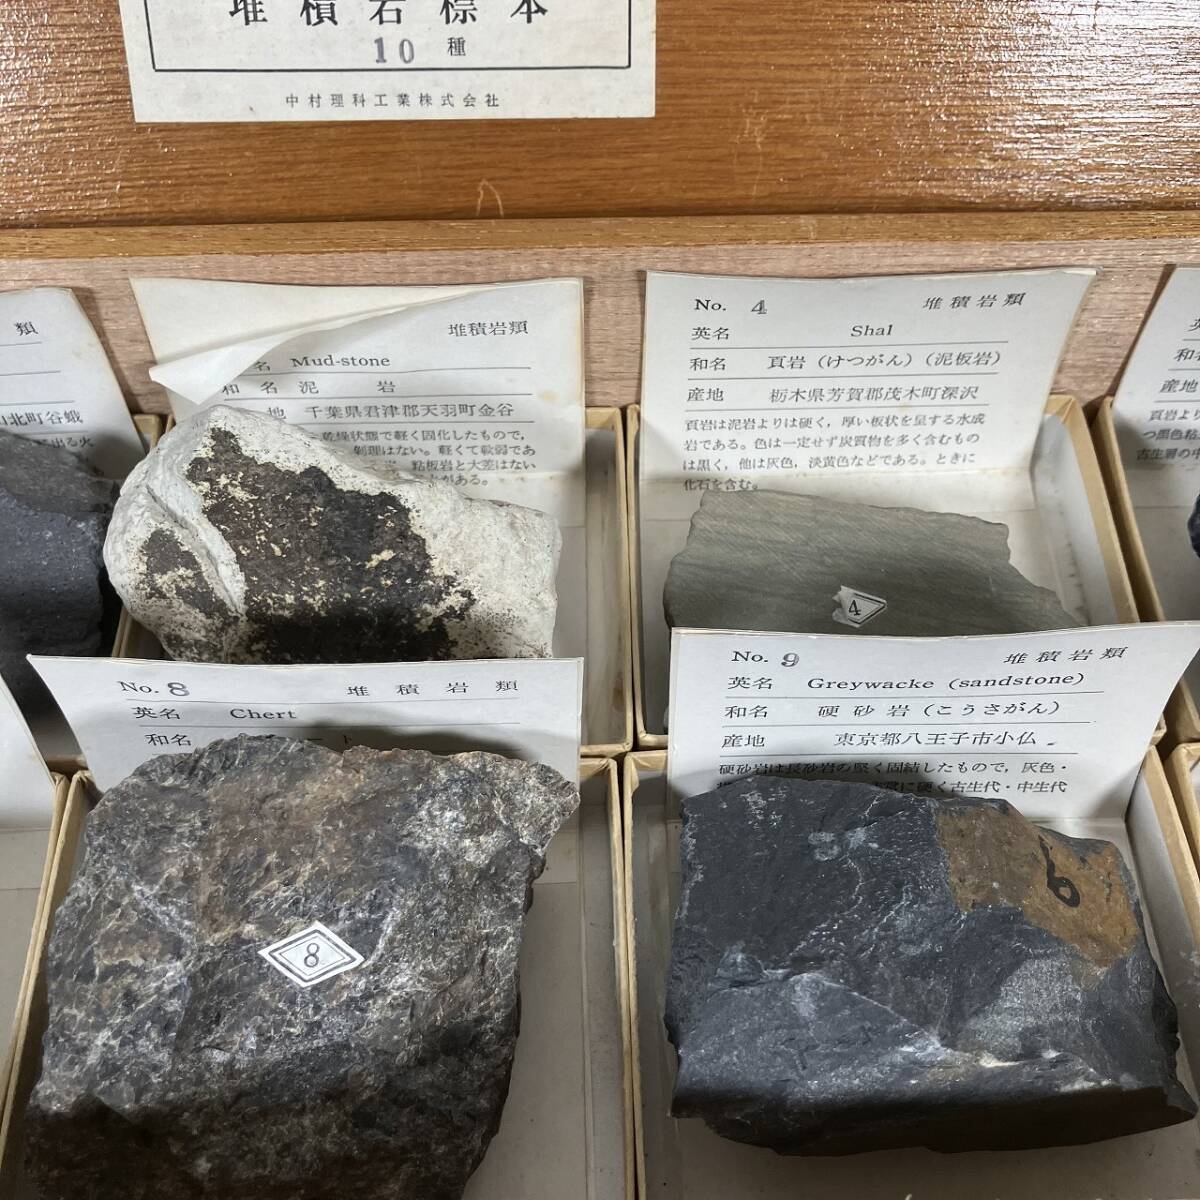 B3-411 岩石標本 堆積岩 火成岩 標本 中村理科工業 昭和 割れあり 教材 資料 木箱入り 中古品の画像3